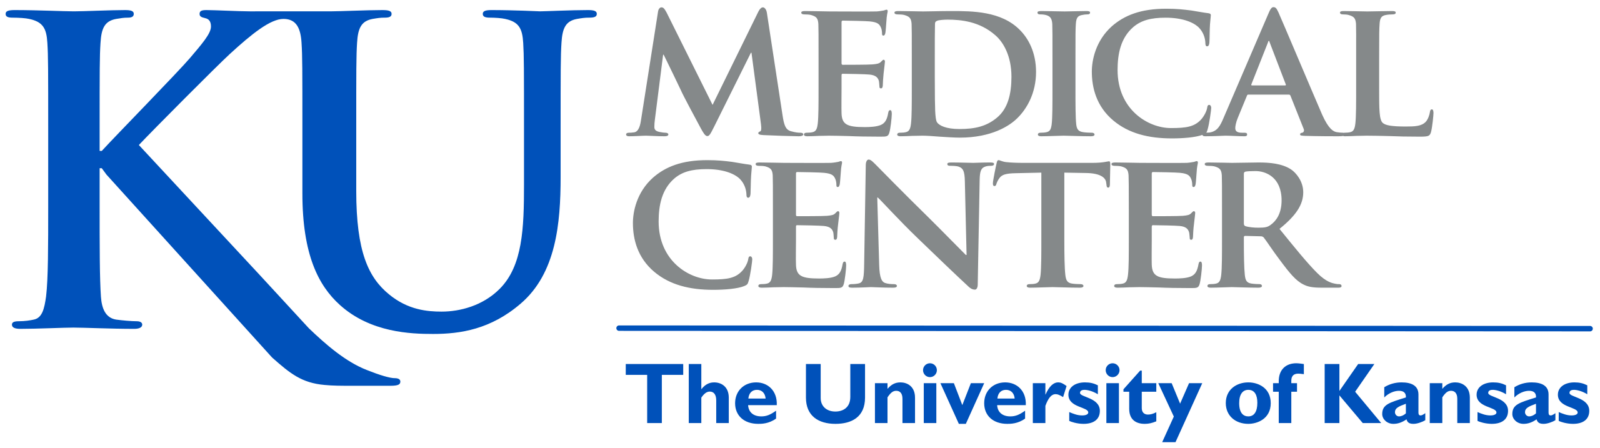 KU_Medical_Center logo